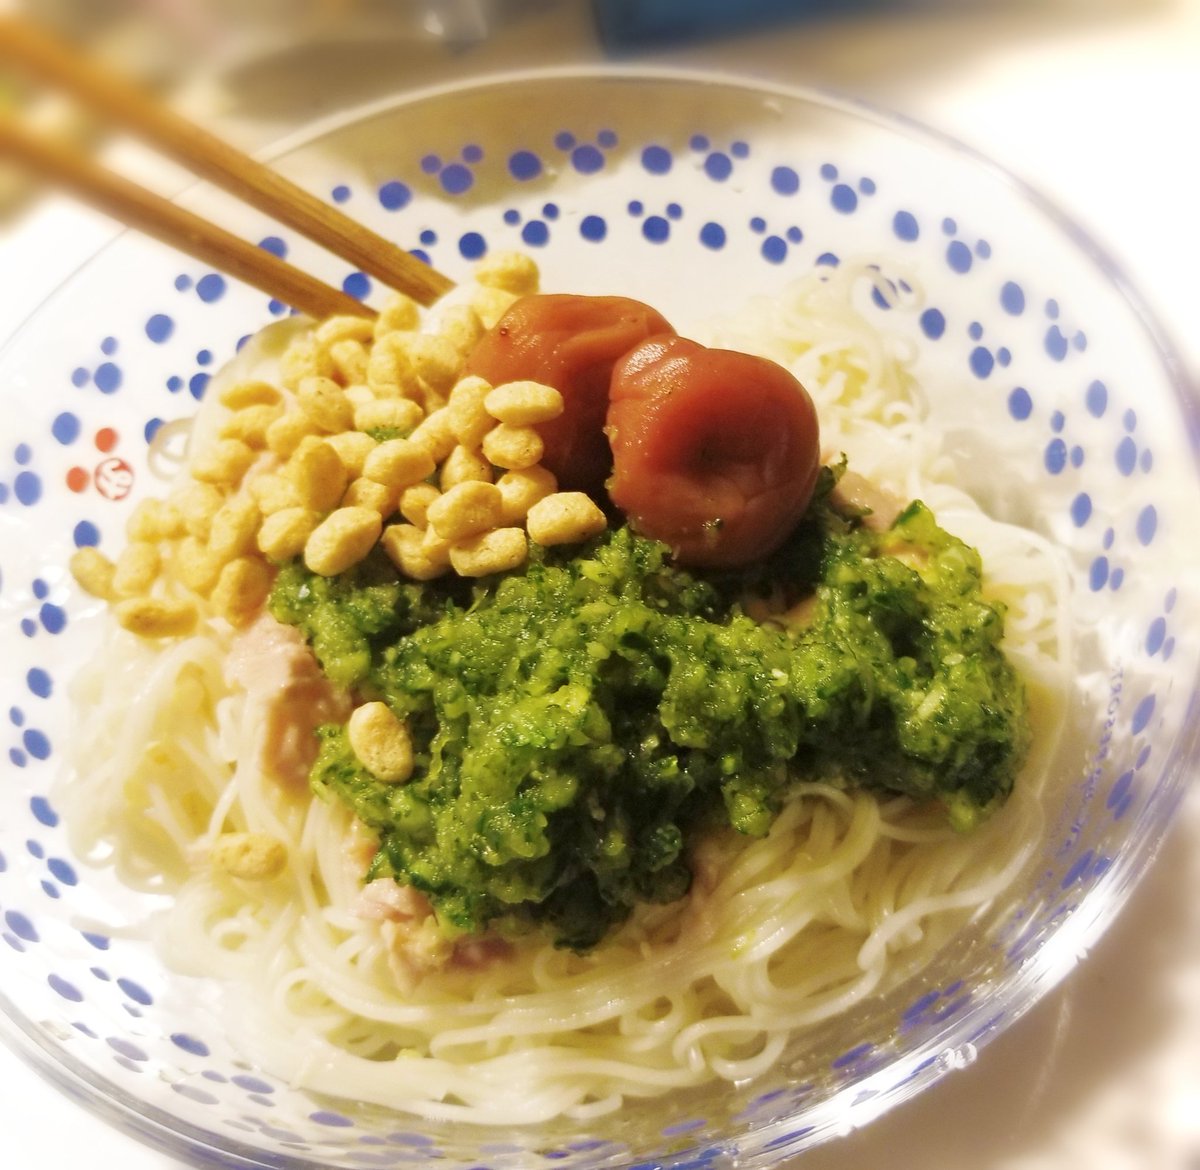 今日は長谷川あかりさんのおろしきゅうりとツナの素麺😊簡単でさっぱりして美味しかったー！外にそば買いにいかなくてよかった！外暑すぎ！
涼しいよ~🥒